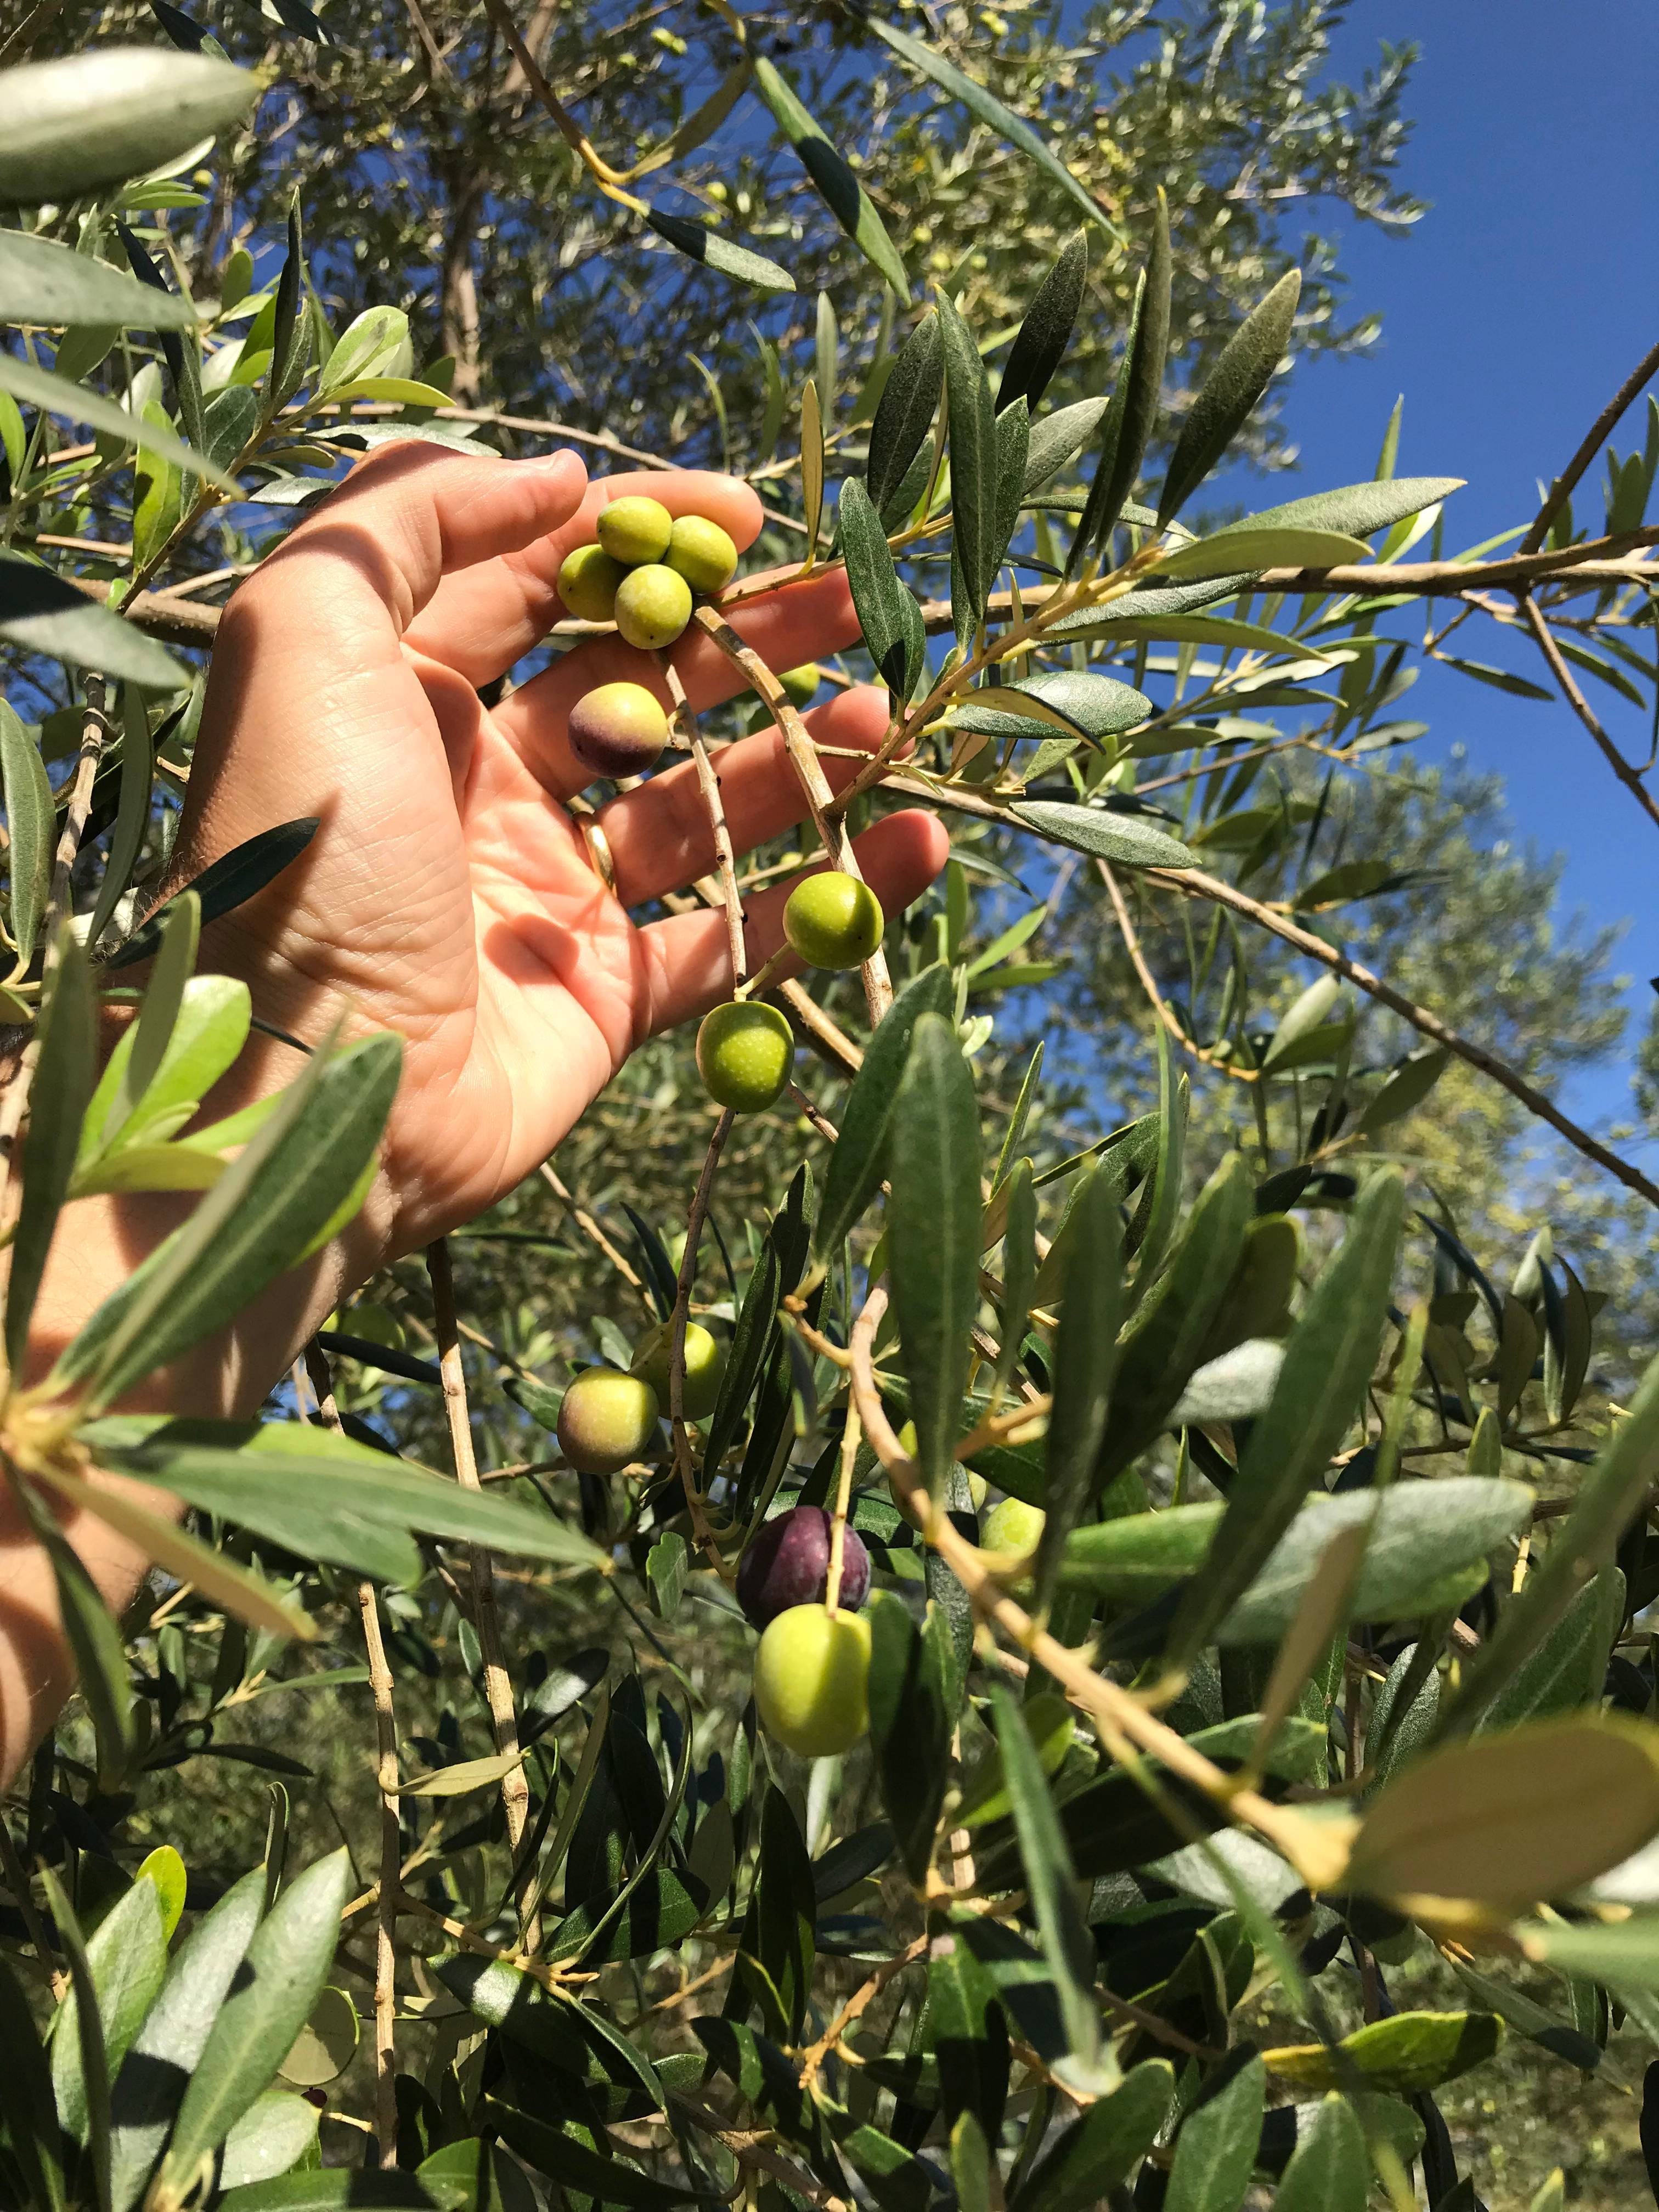 Na imagem, vemos uma mão pegando os frutos de uma oliveira.